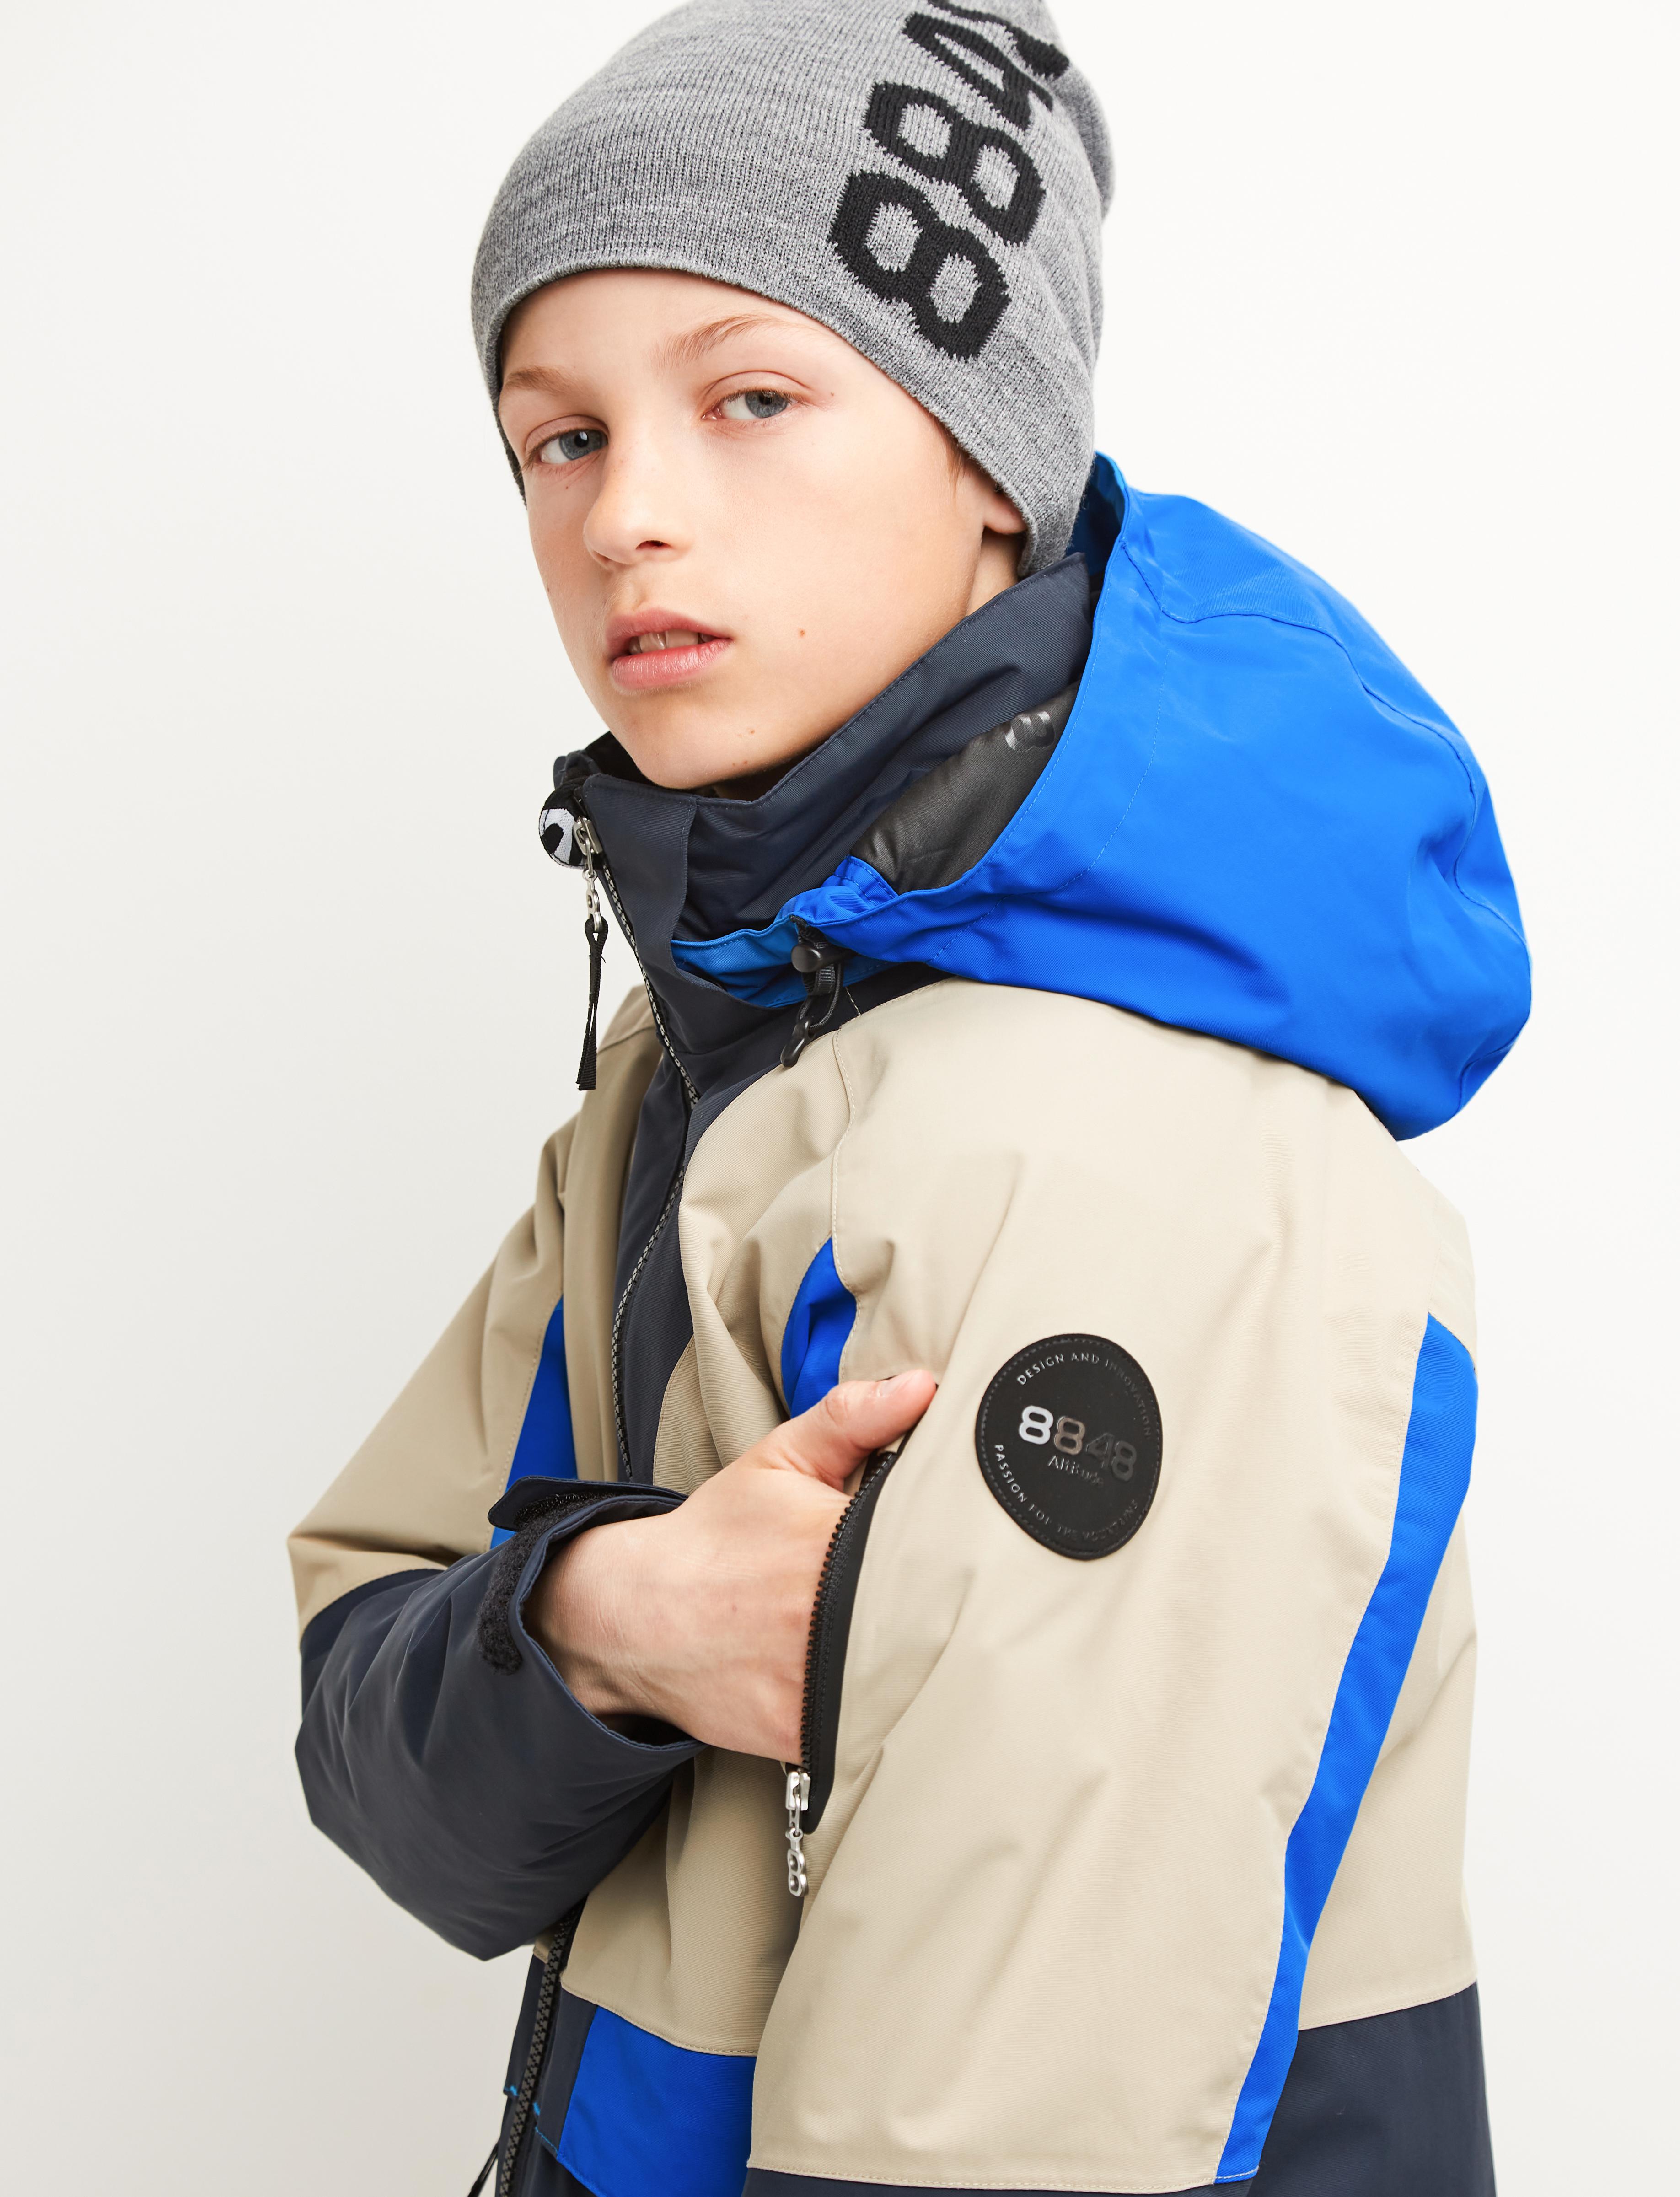 Shop jackets for kids online - 8848